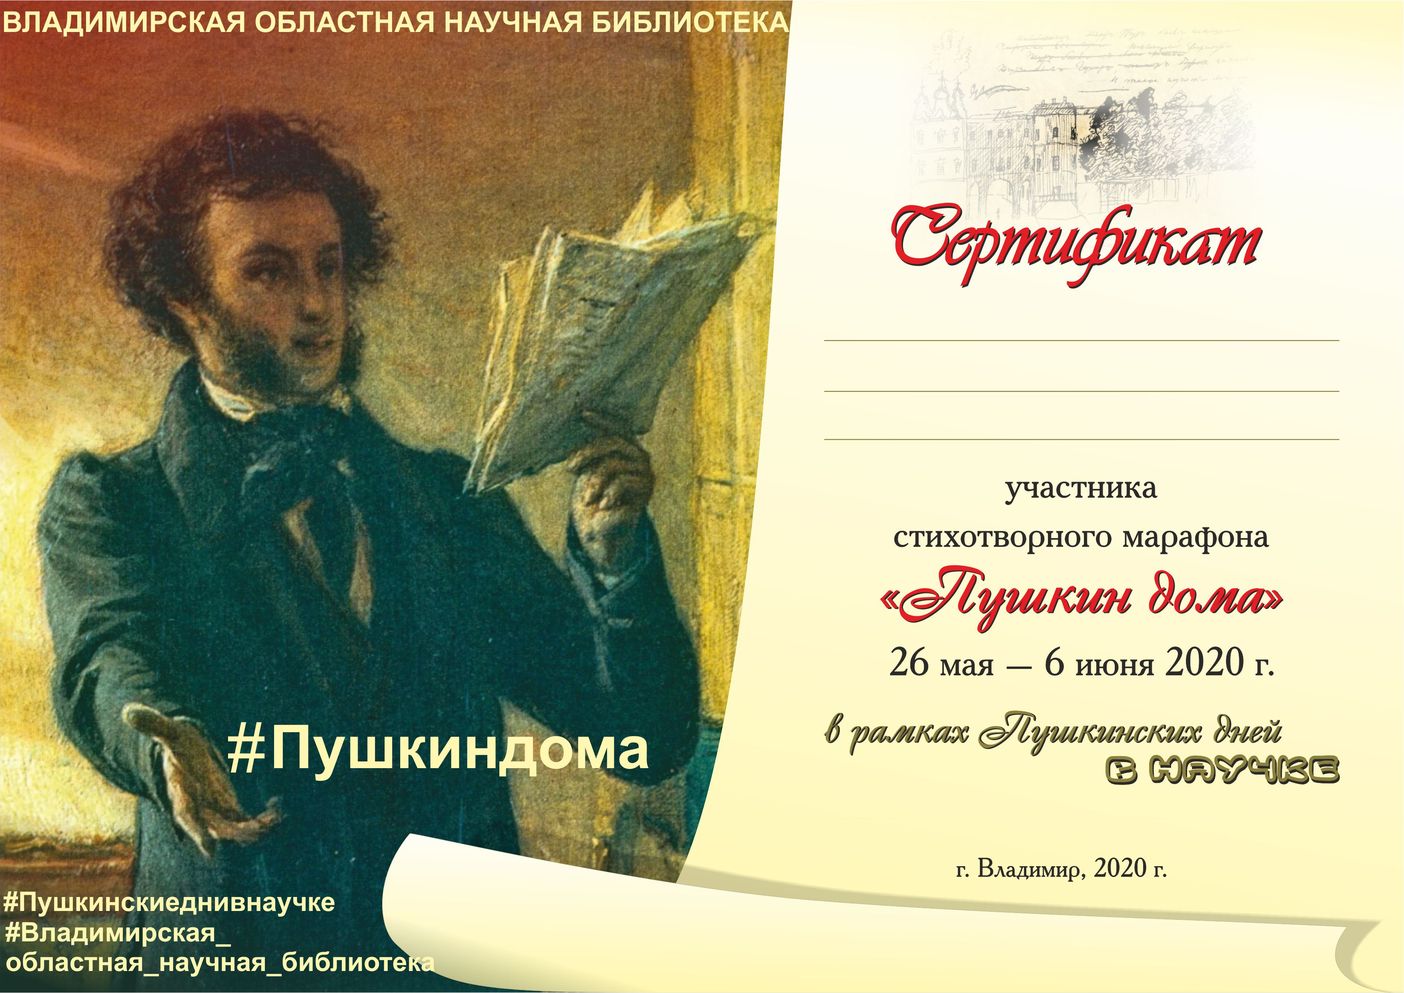 миниатюра сертификата пушкинского марафона